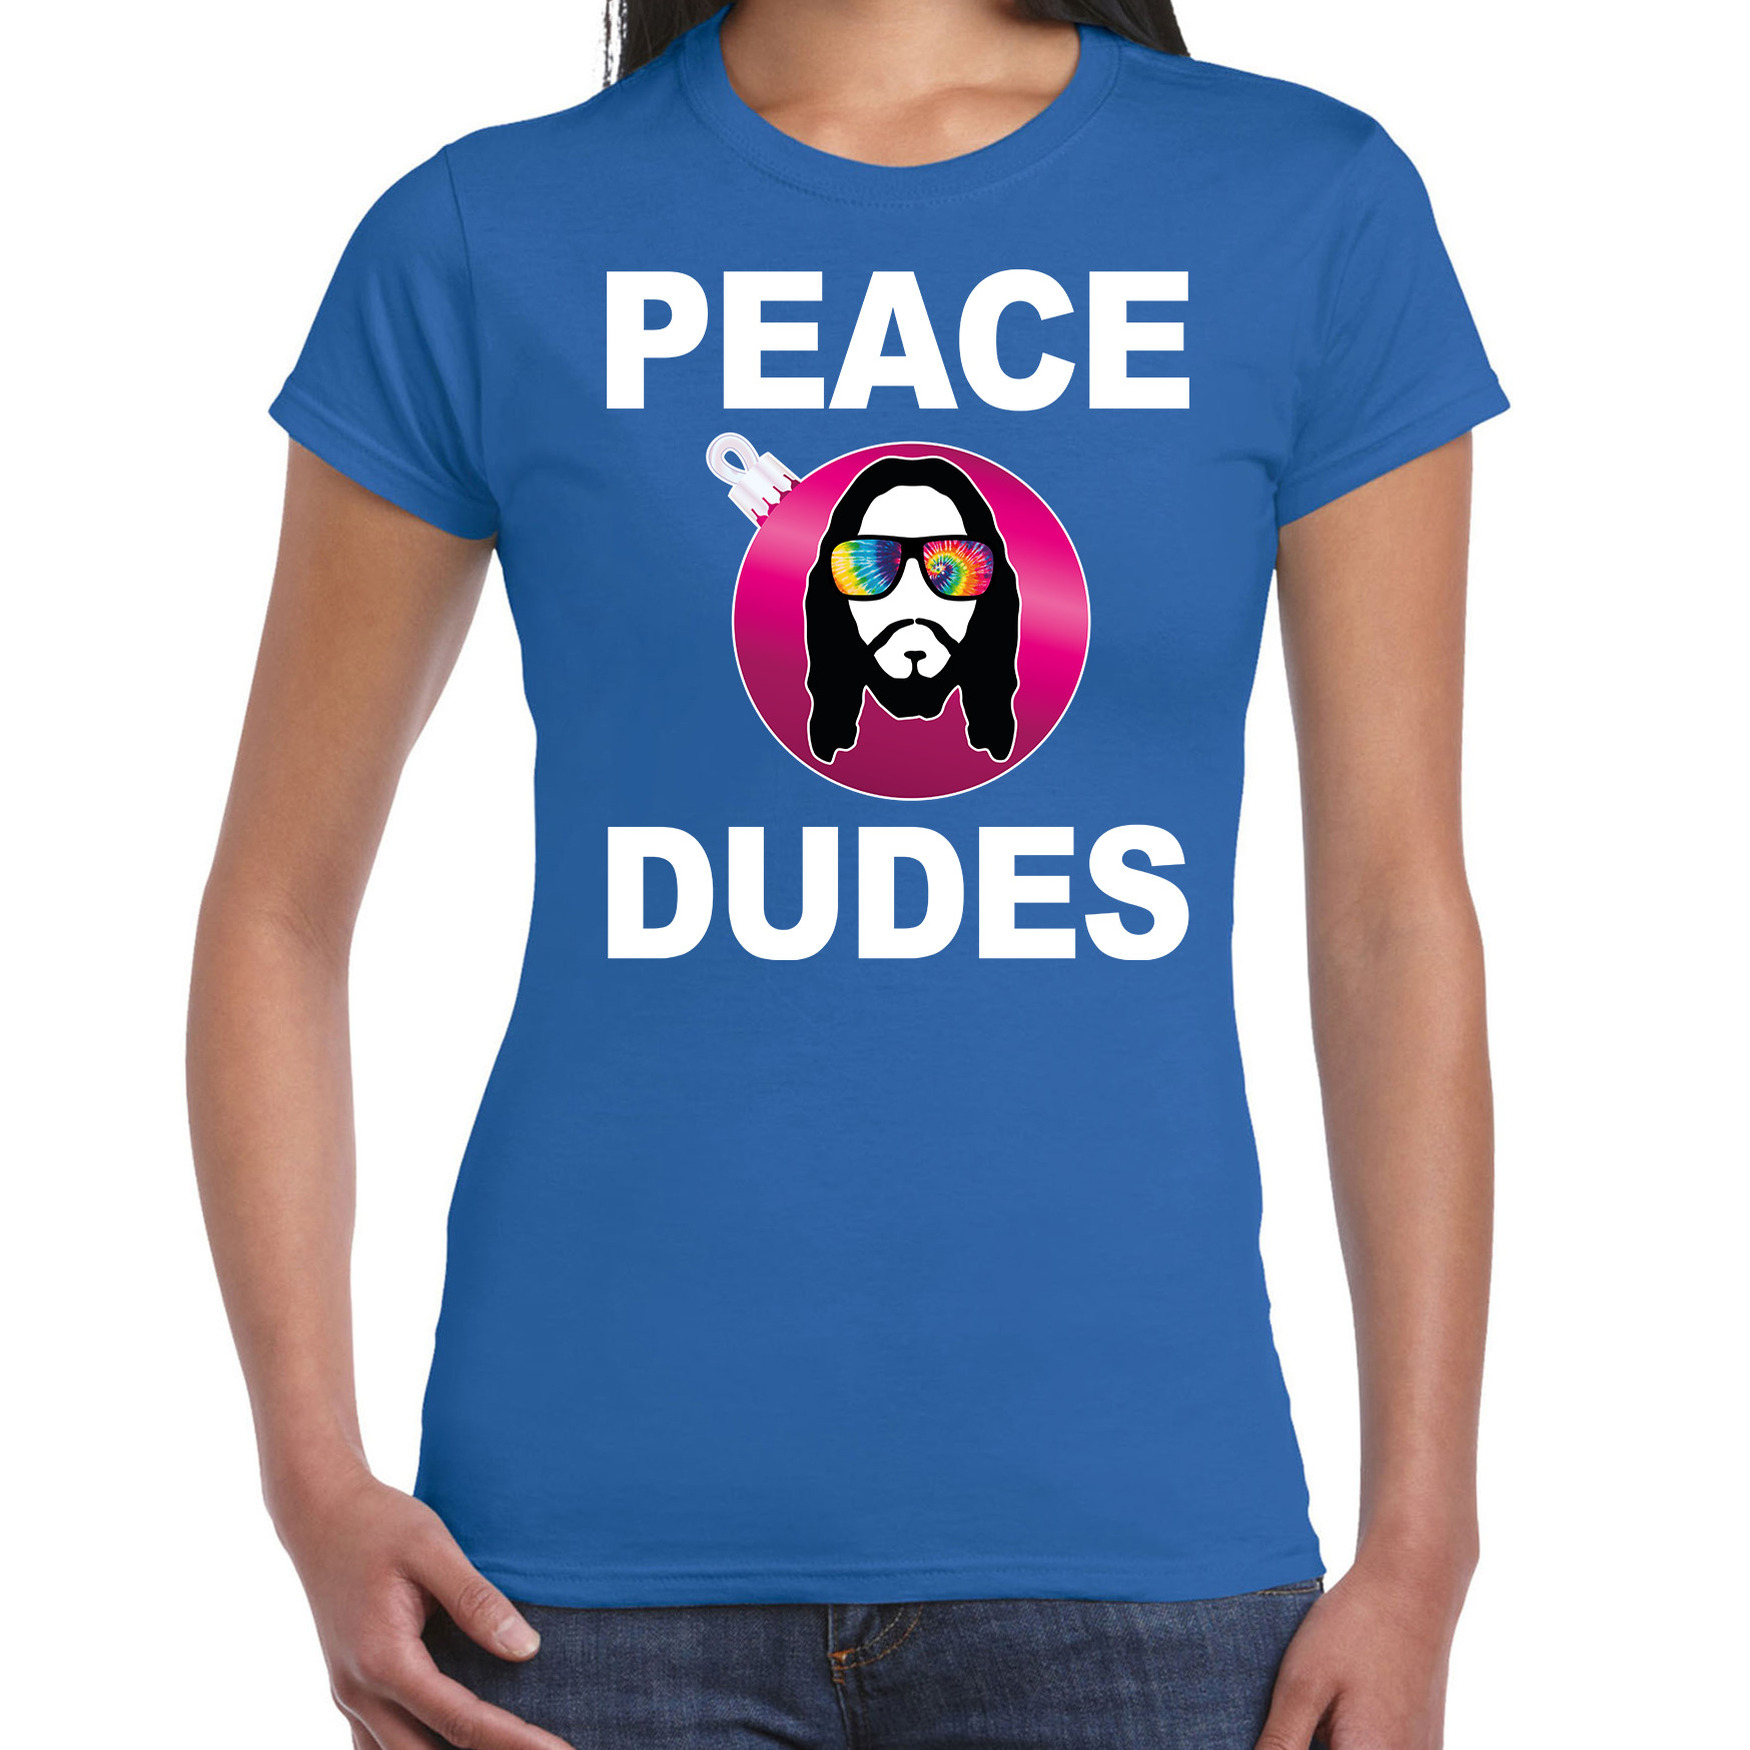 Hippie jezus Kerstbal shirt - Kerst outfit peace dudes blauw voor dames